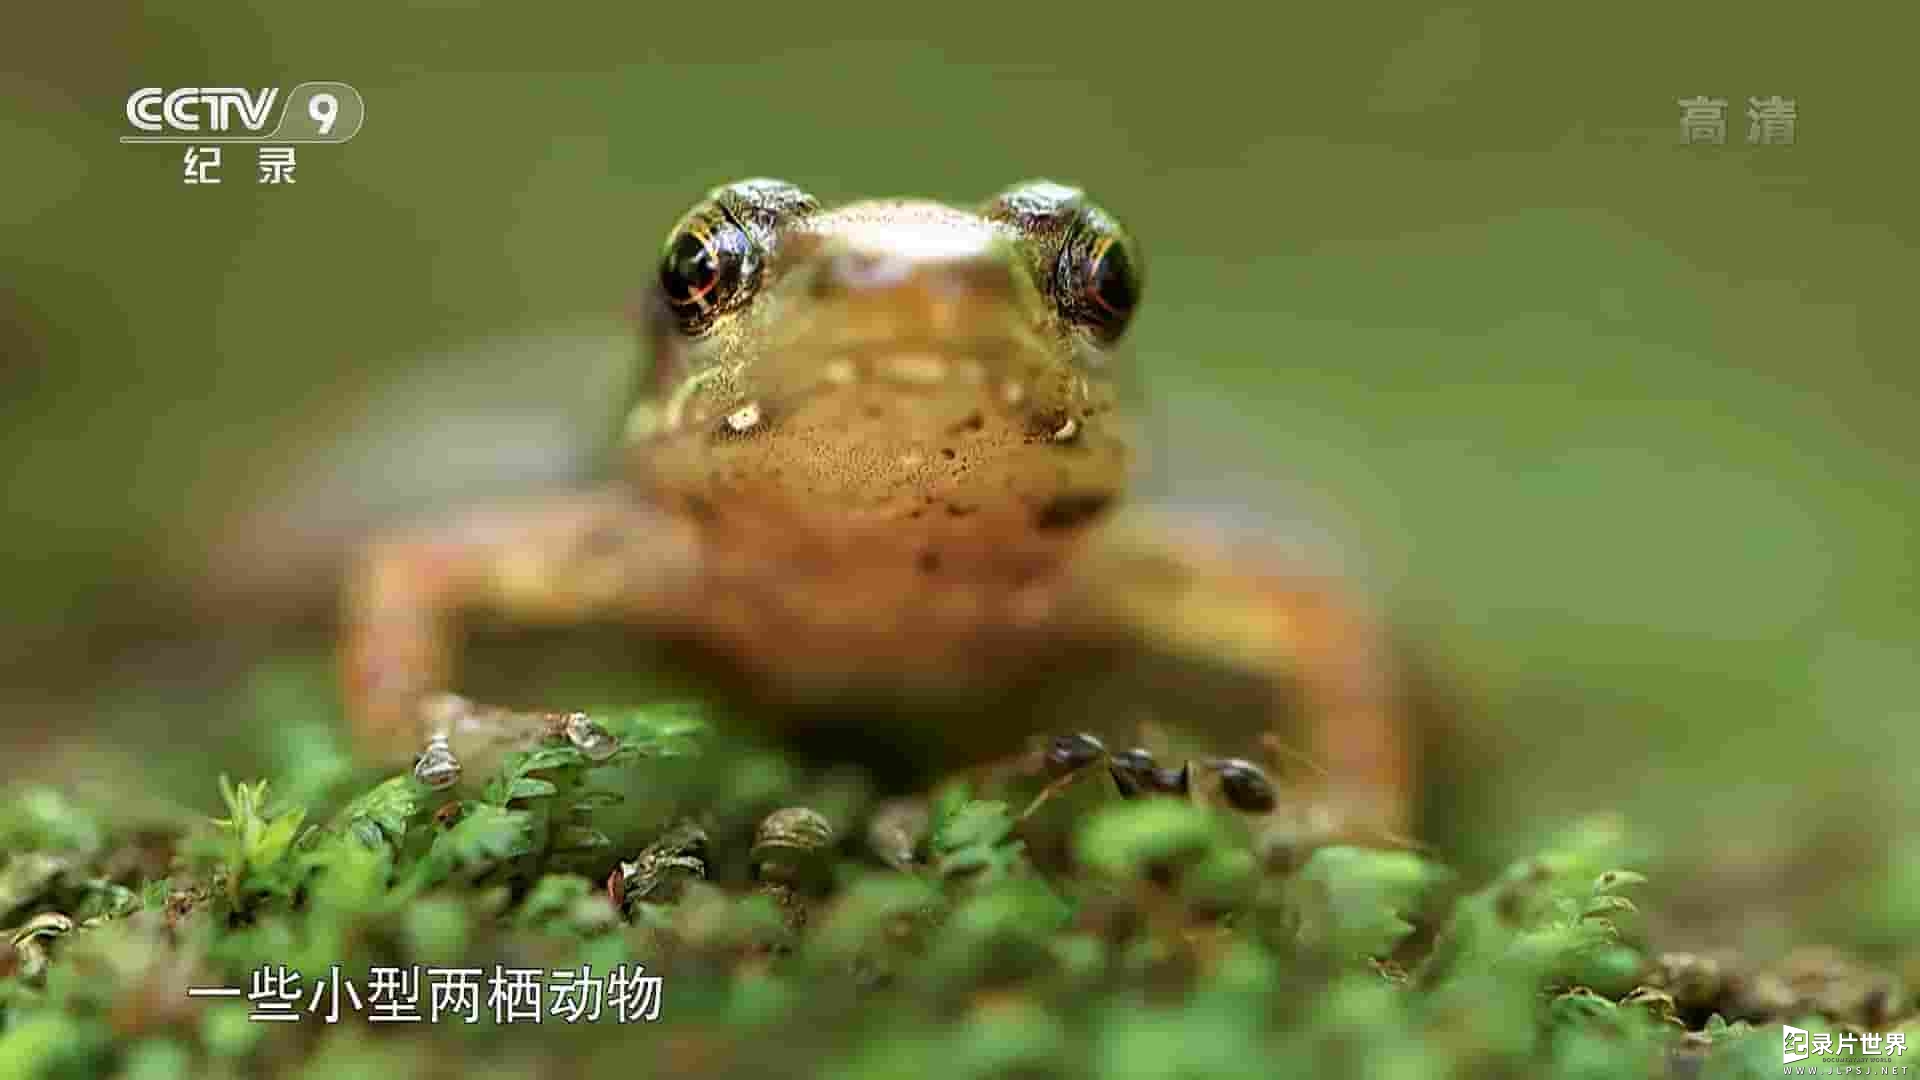 央视纪录片《蛙类的秘密生活 The Secret Life of Frogs 2019》全1集